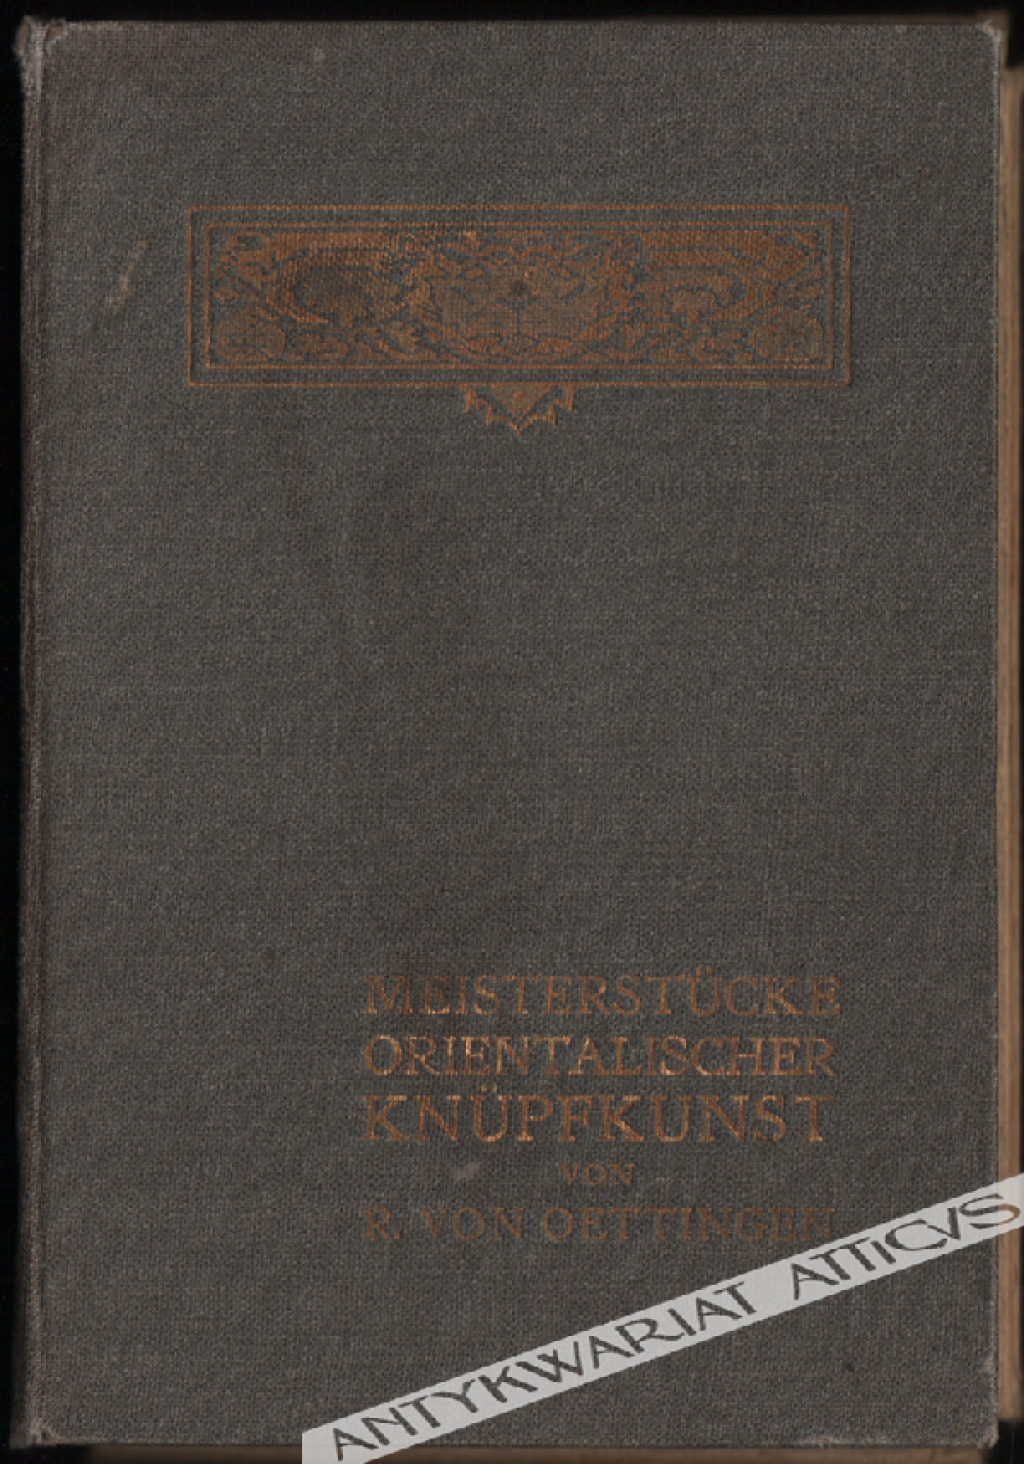 Meisterstucke Orientalischer Knupfkunst [zestaw 60 kart pocztowych]